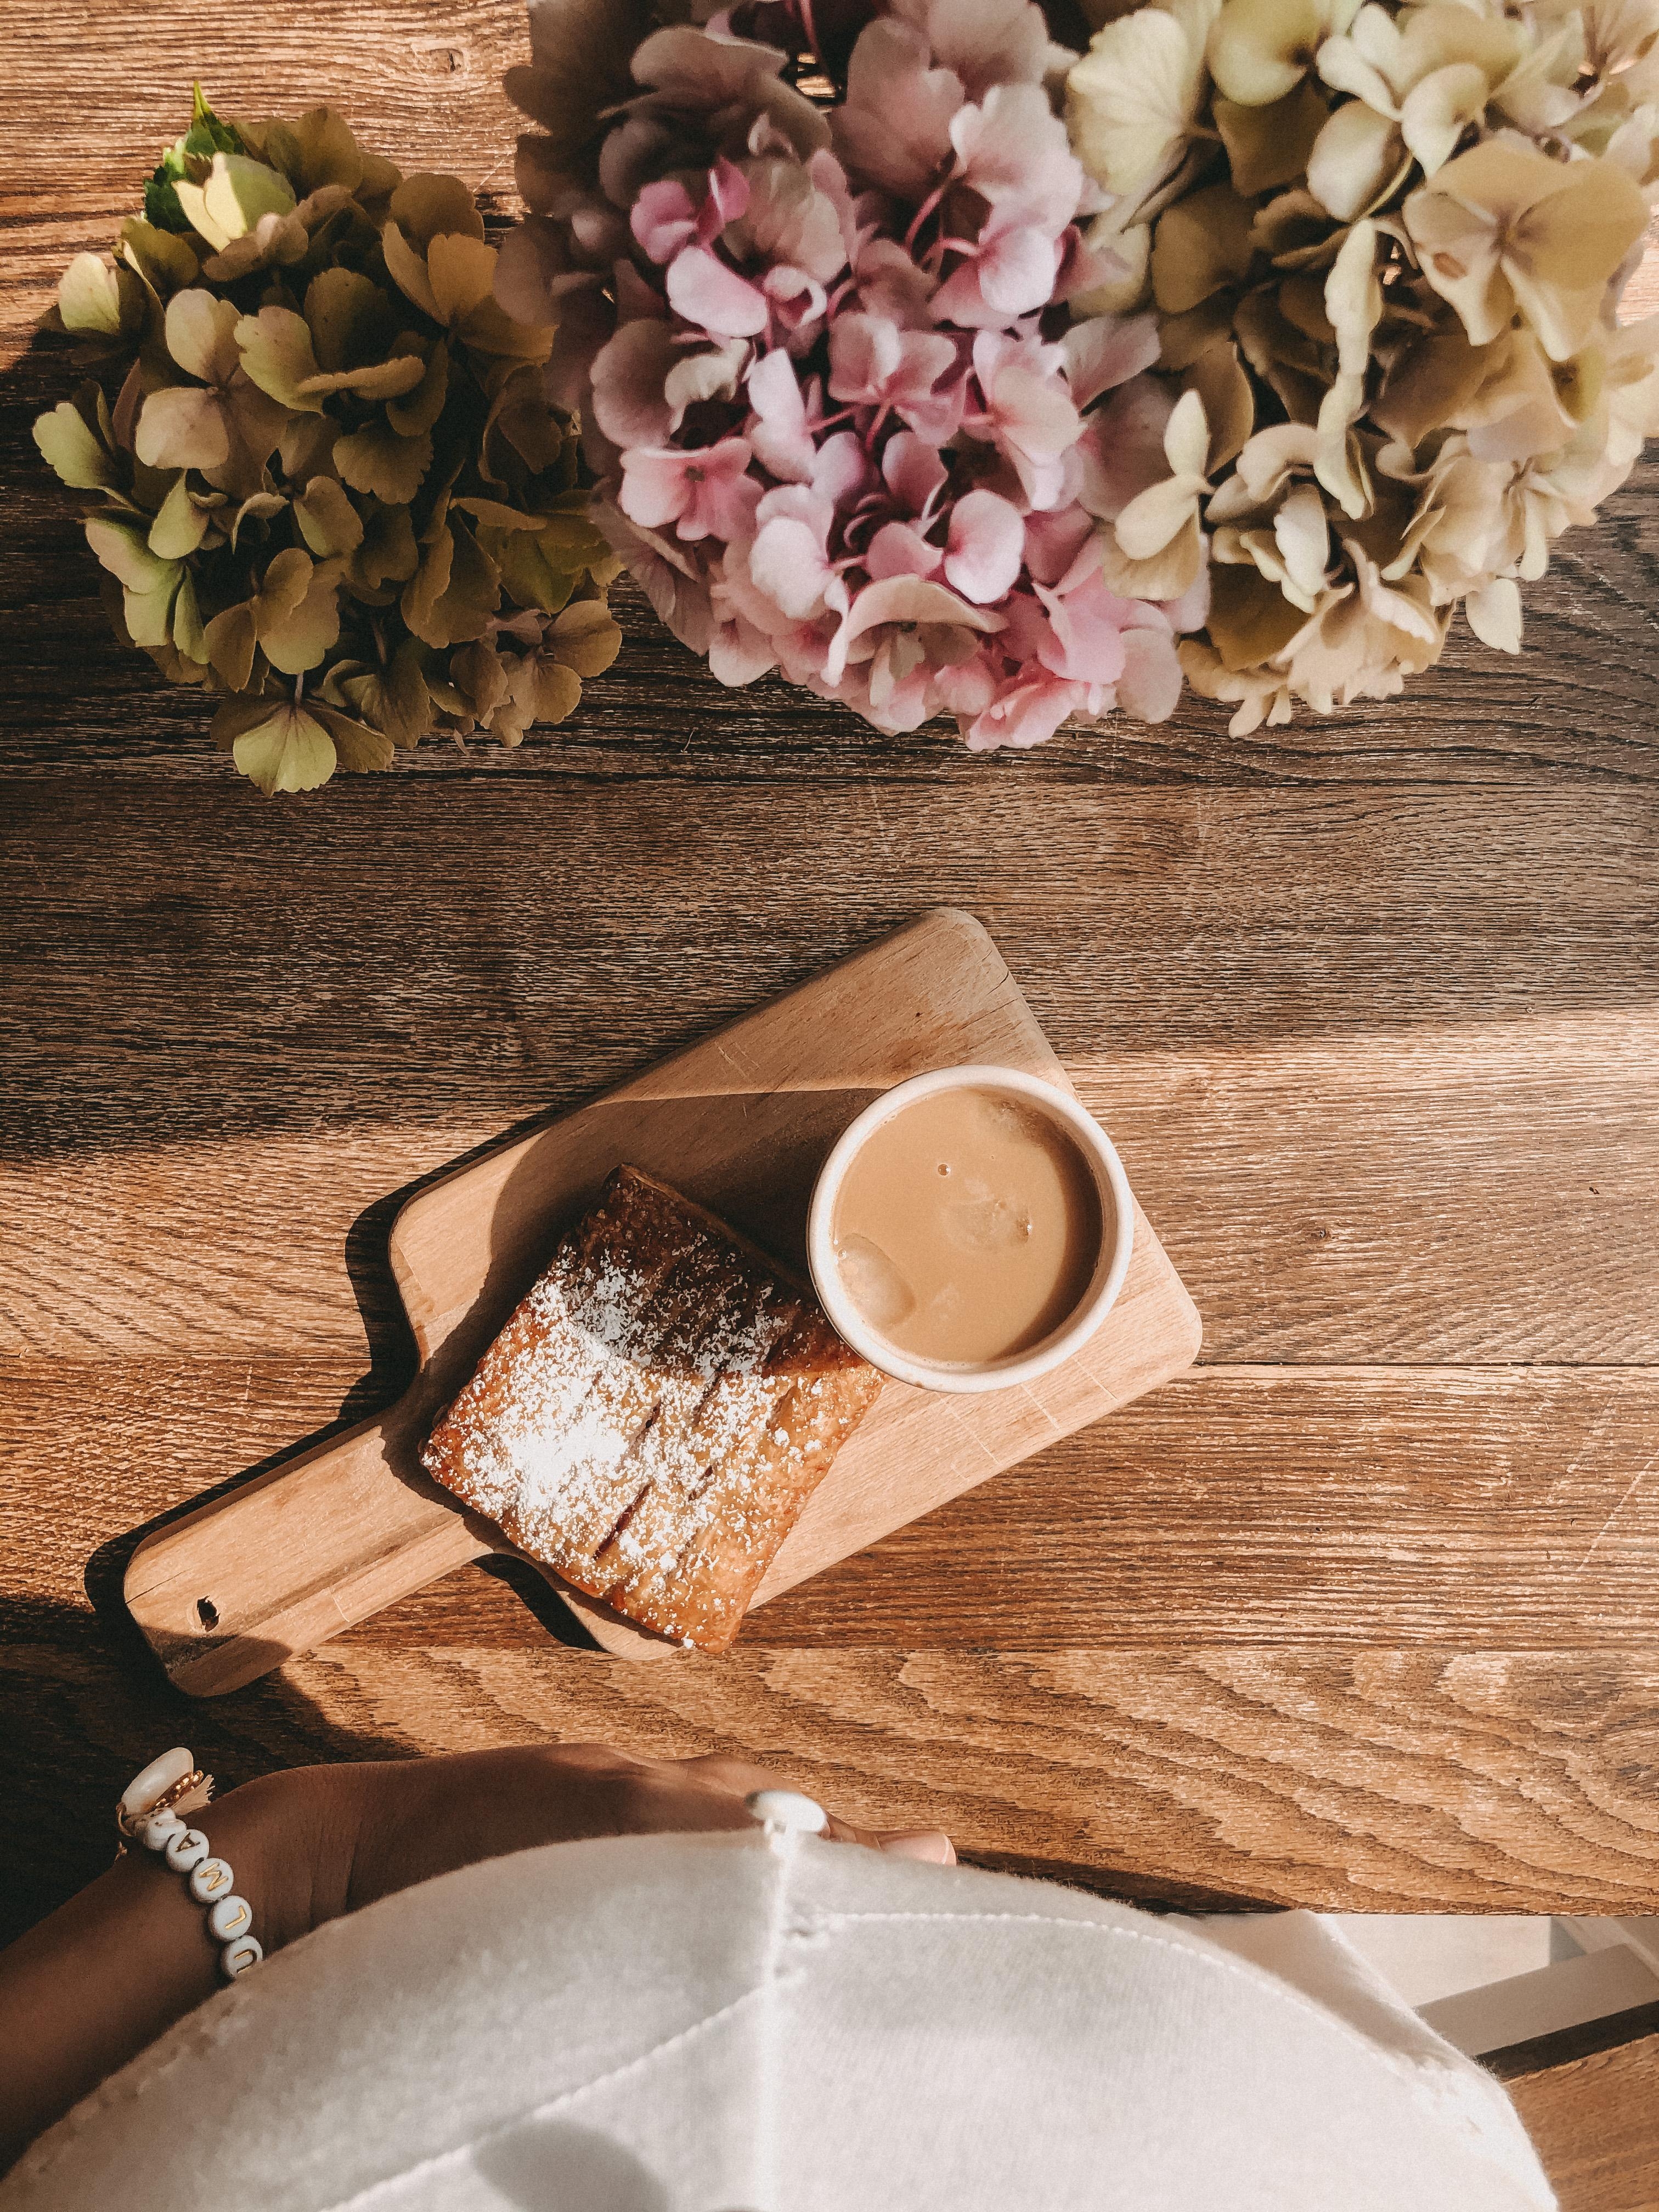 Coffeetable 🌿
#coffeelover
#hortensieliebe
Habt einen schönen Tag !